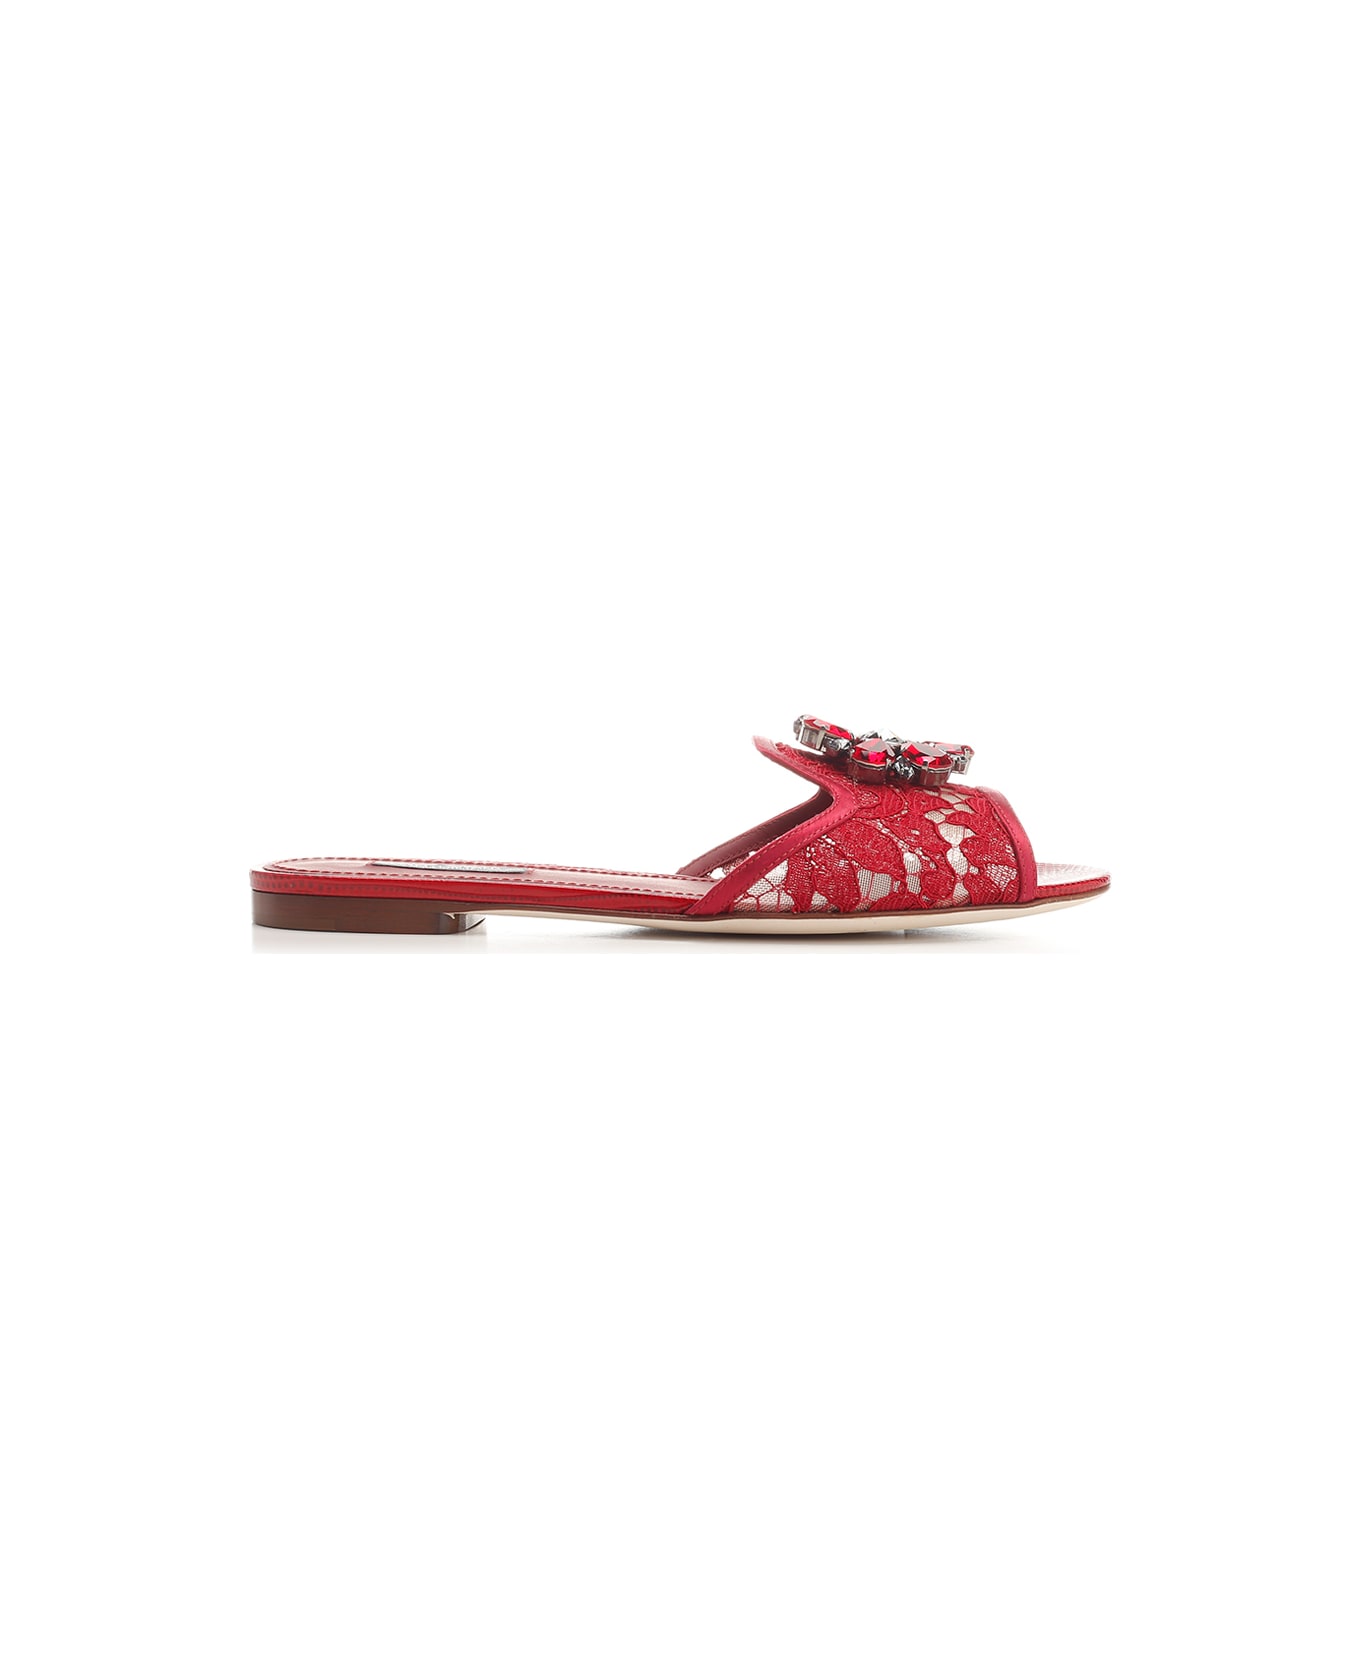 Dolce & Gabbana 'taormina' Lace Sandals - Red サンダル